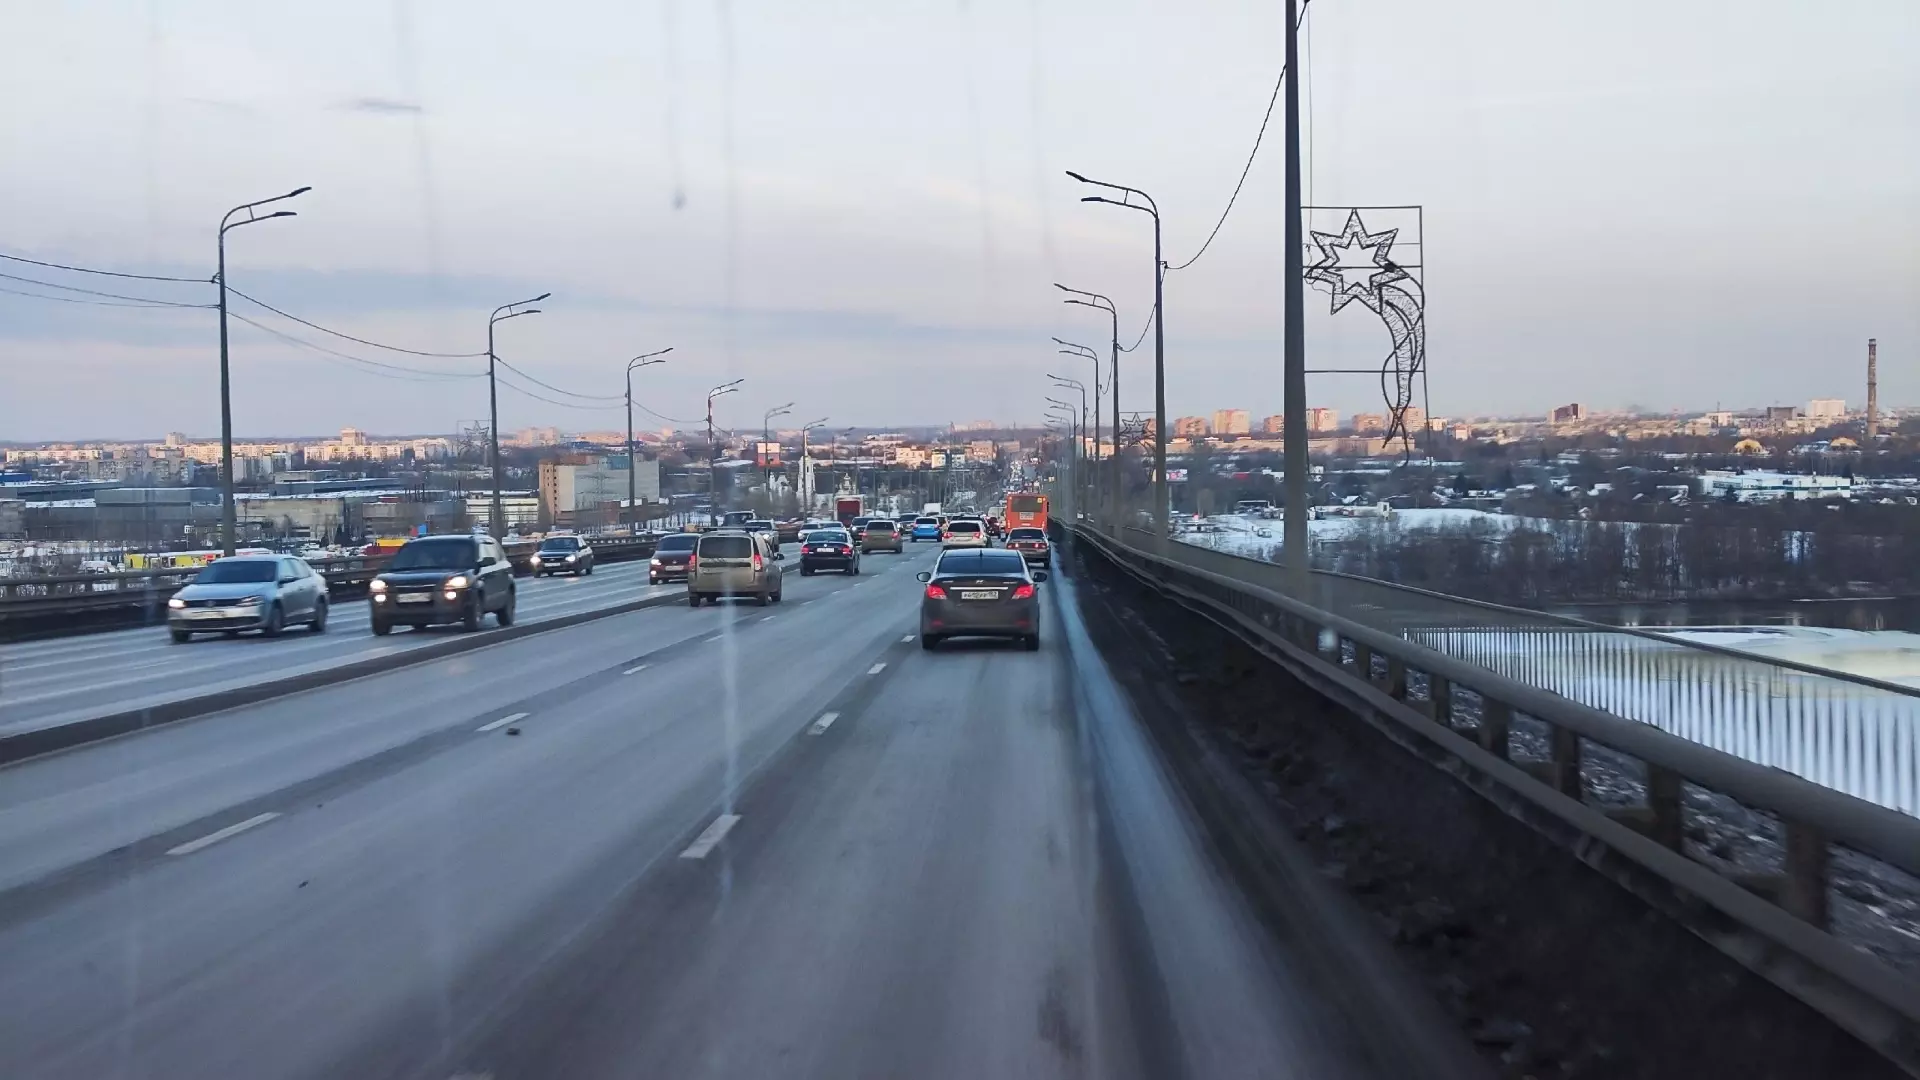 Развернувшийся автобус спровоцировал огромную пробку на Мызинском мосту